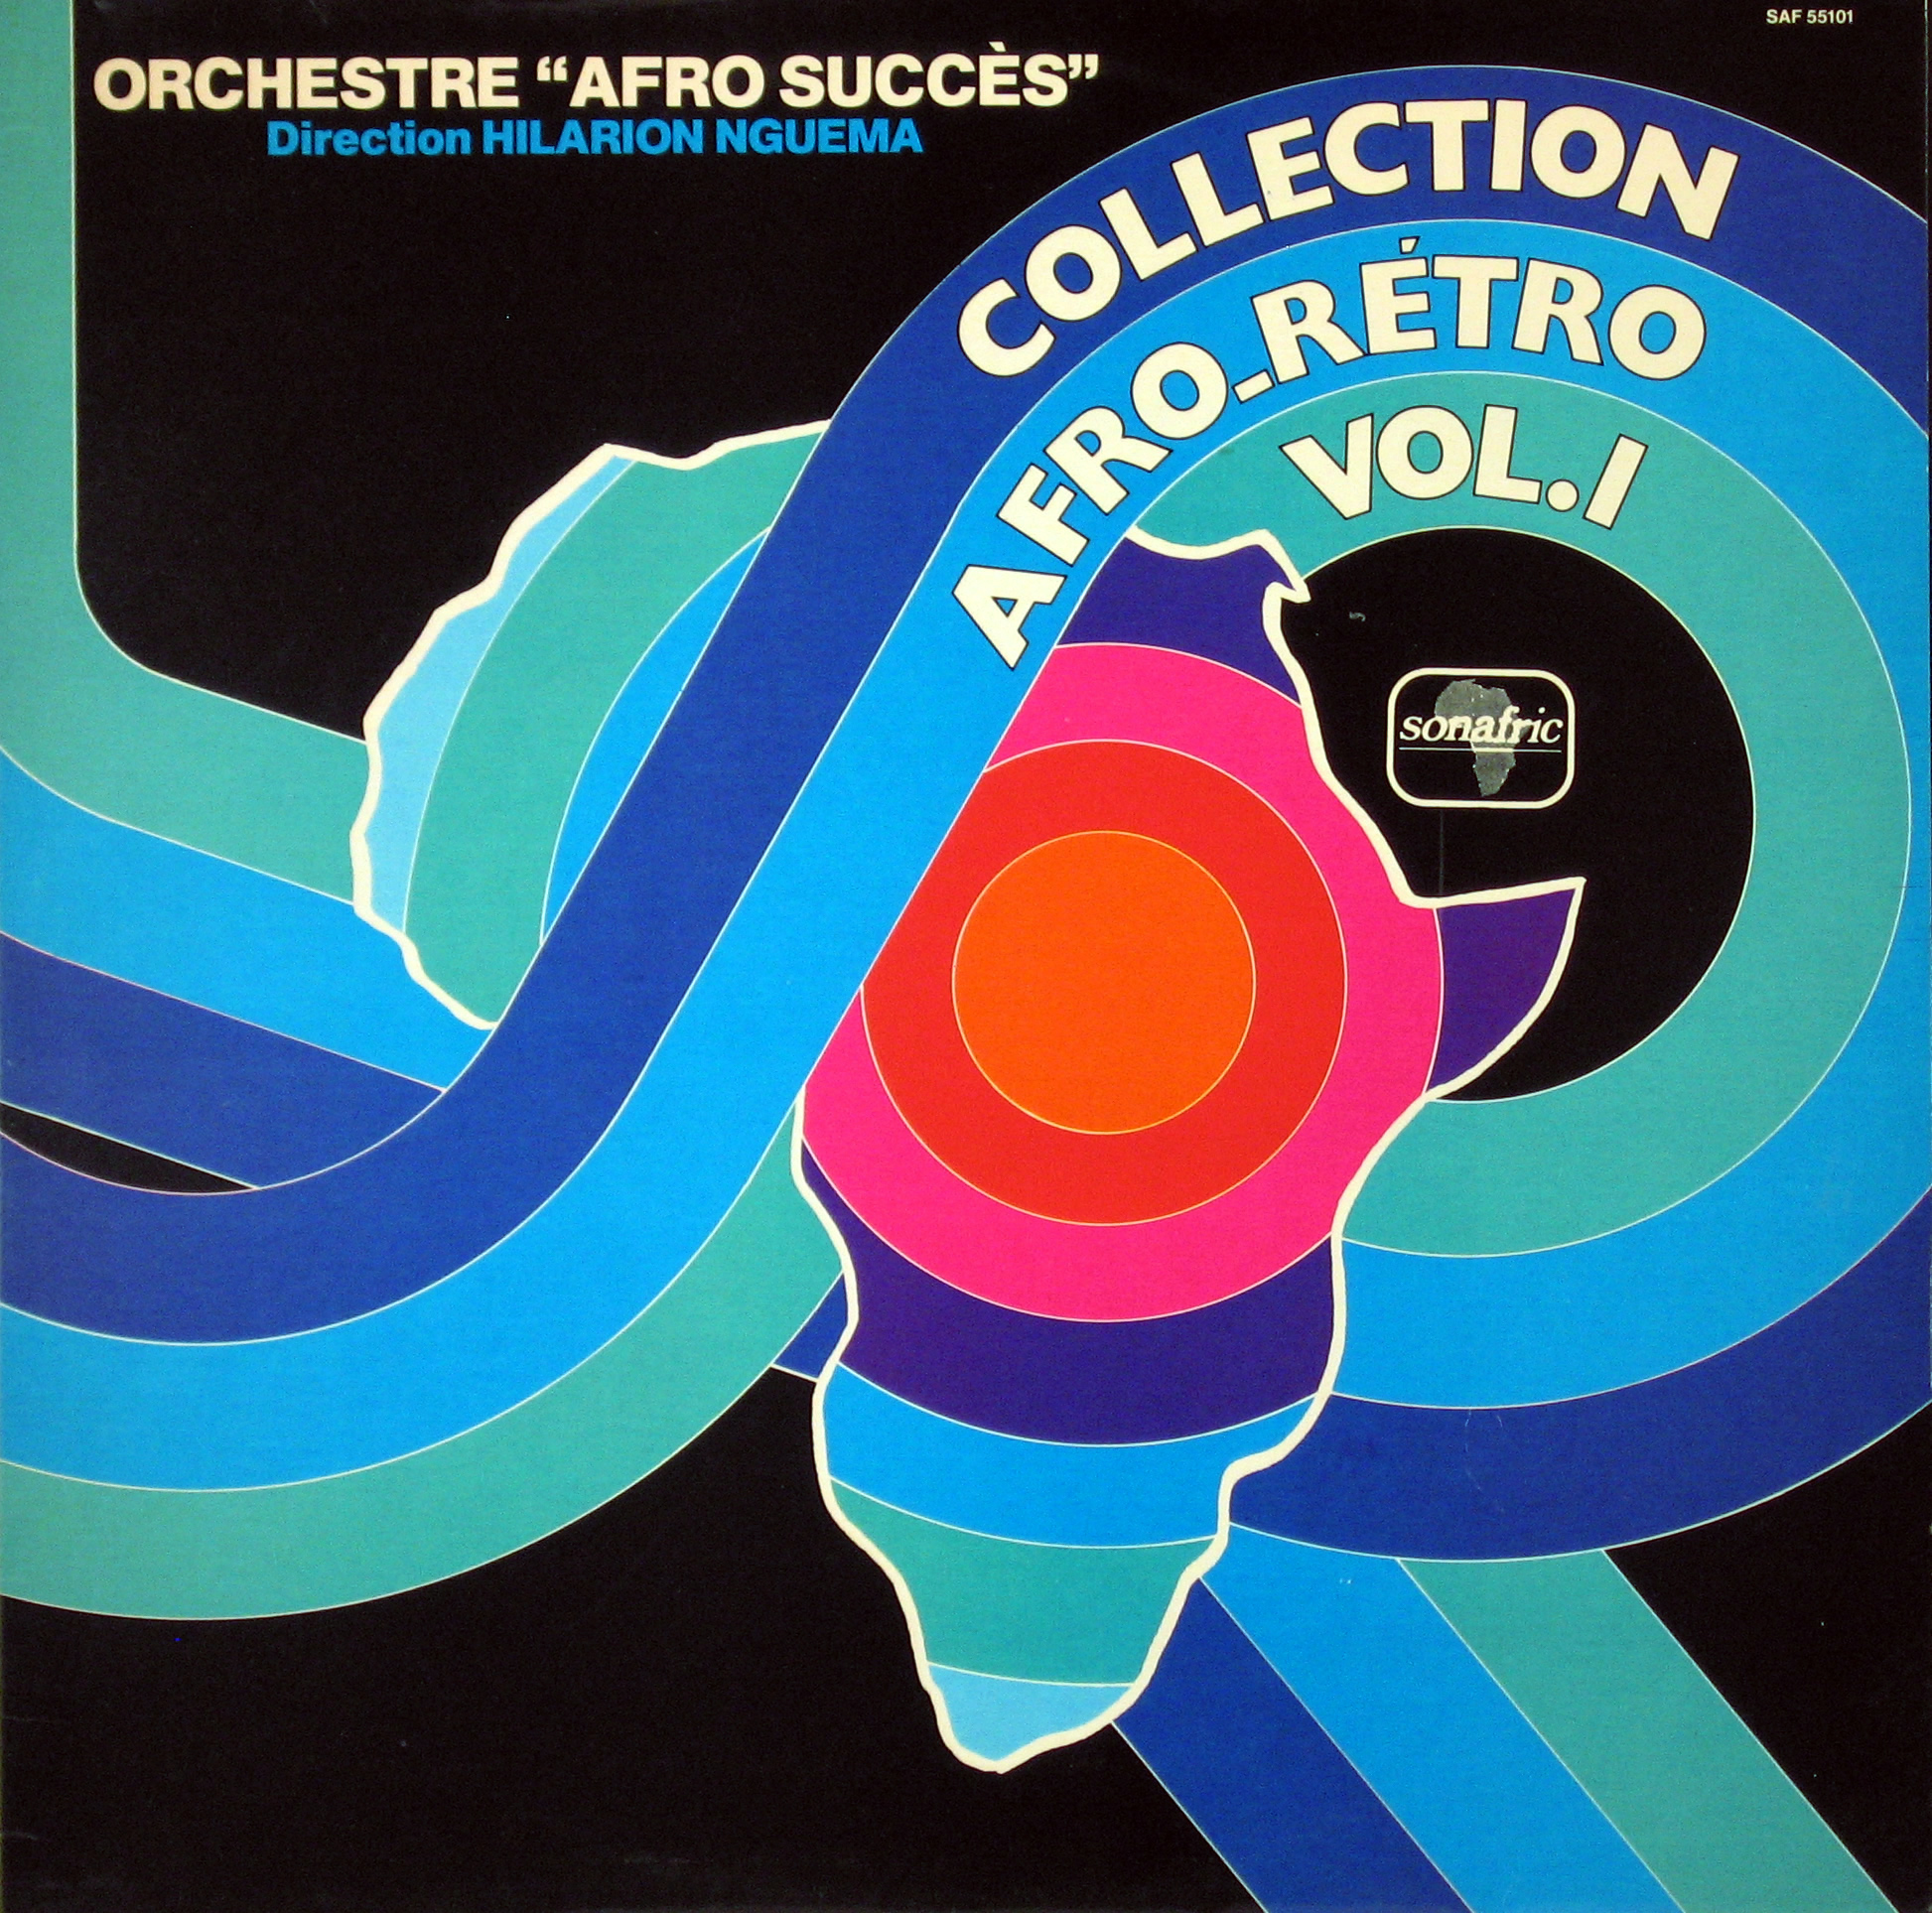 Orchestre “Afro Succès”direction Hilarion Nguema -Collection Afro-Rétro vol.1, 1978 Orchestre-Afro-Succes-front